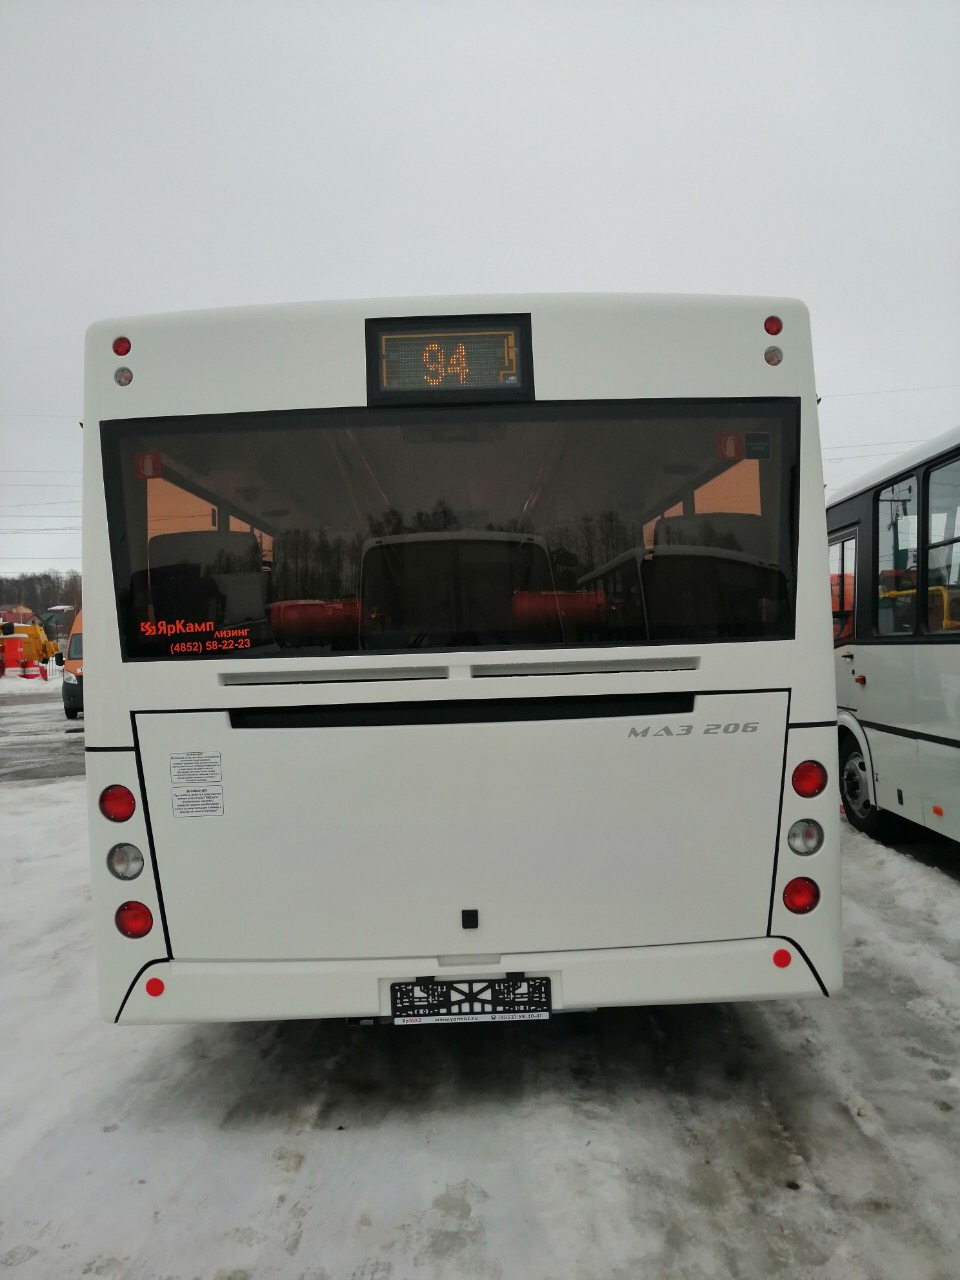 Новый городской автобус МАЗ-206086 отгружен в лизинг